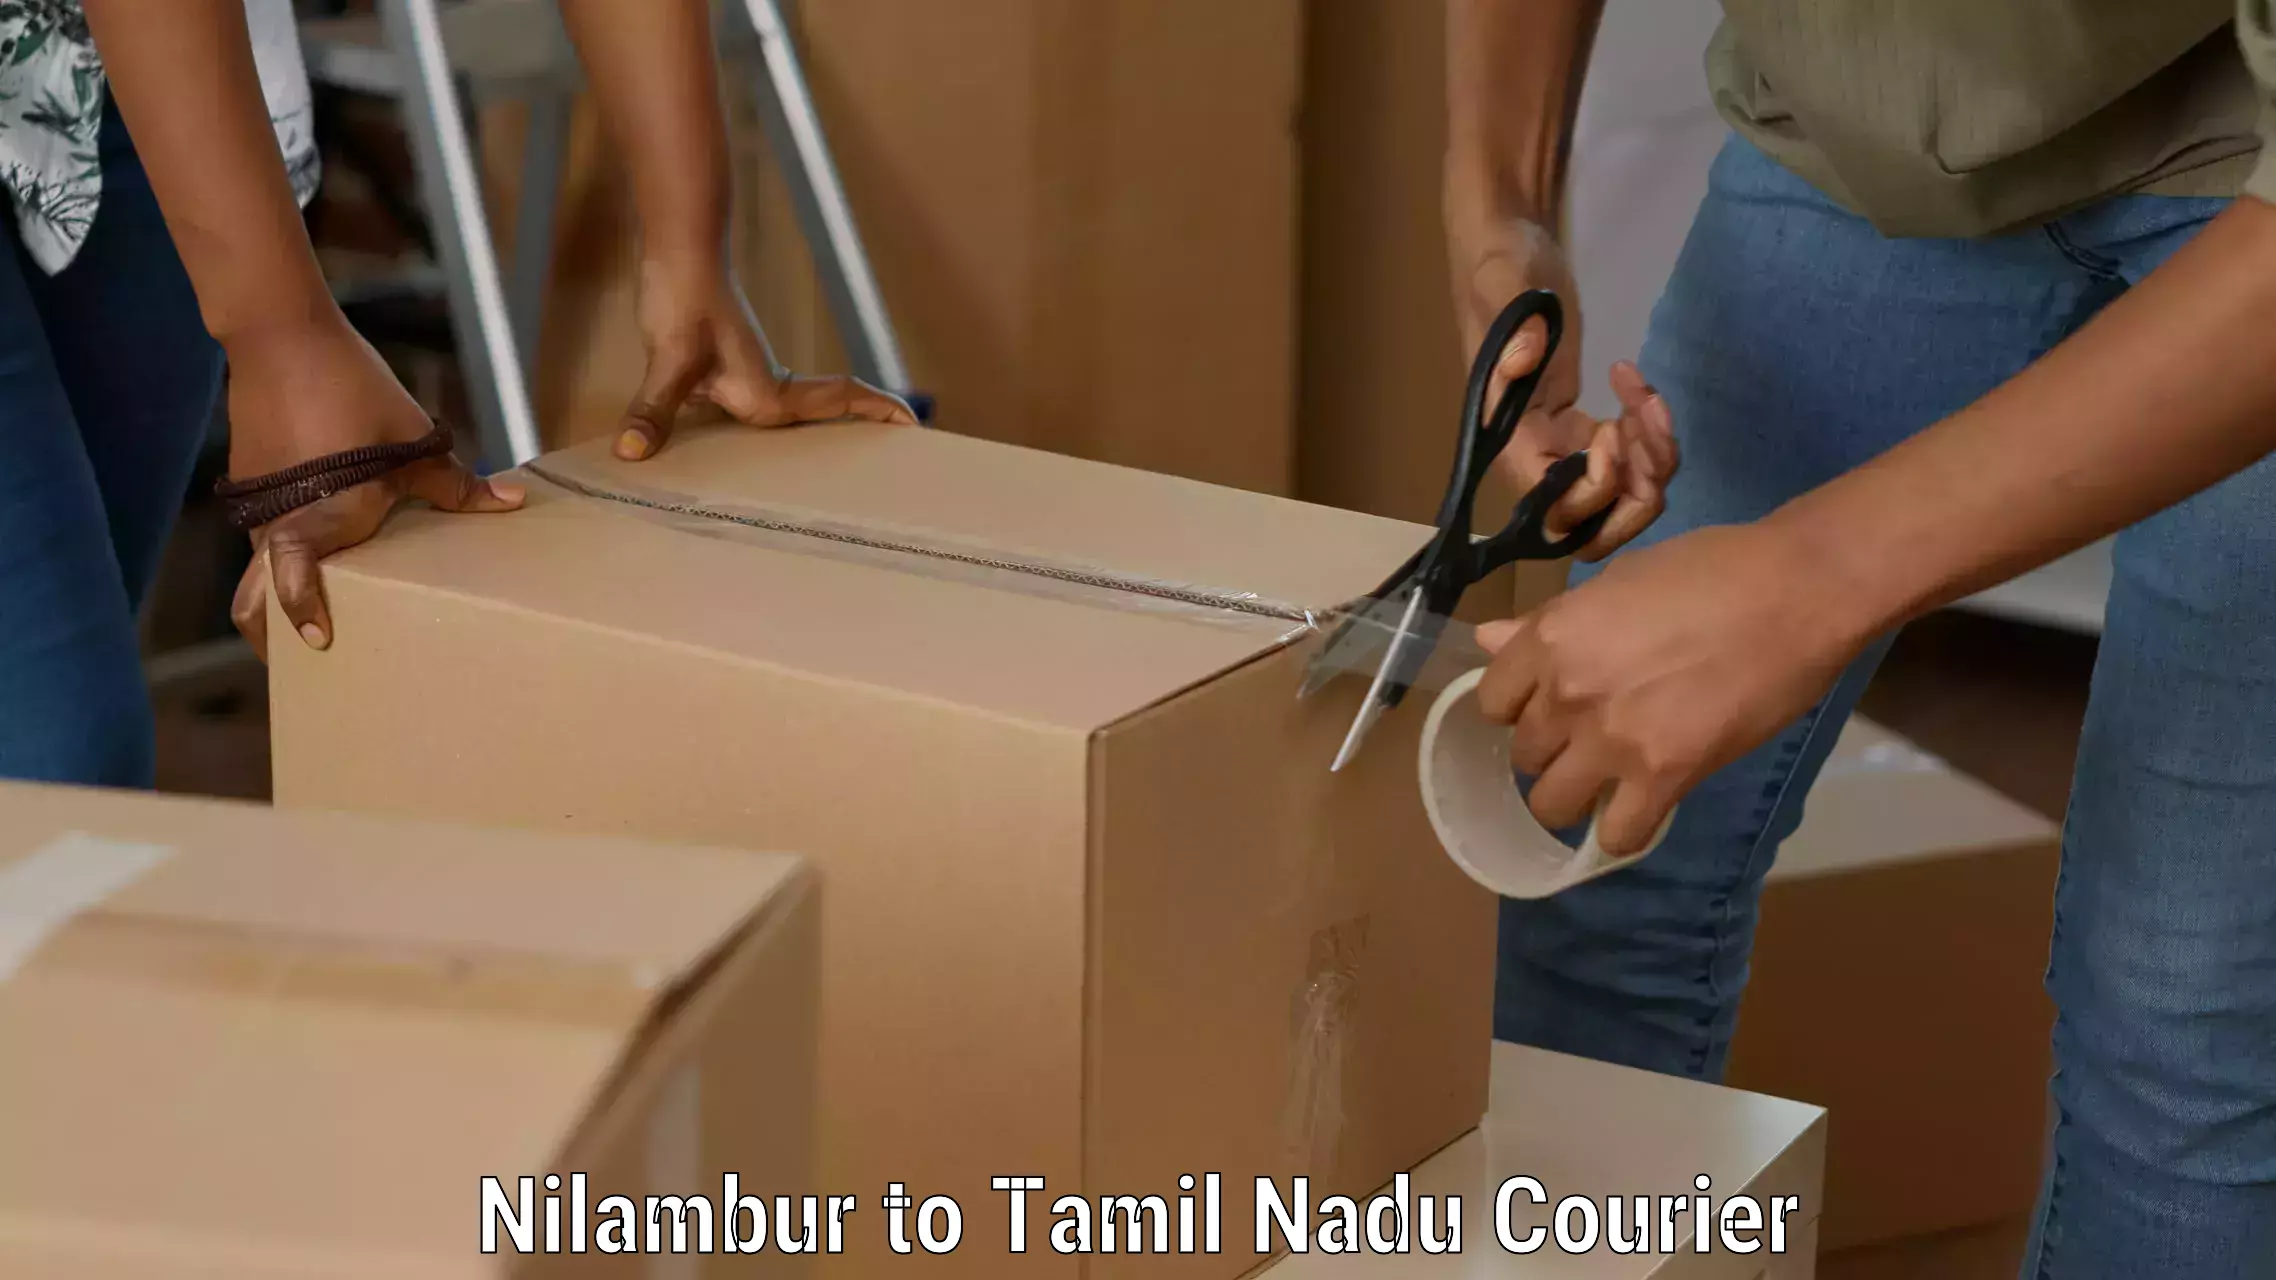 24/7 courier service Nilambur to Amrita Vishwa Vidyapeetham Coimbatore